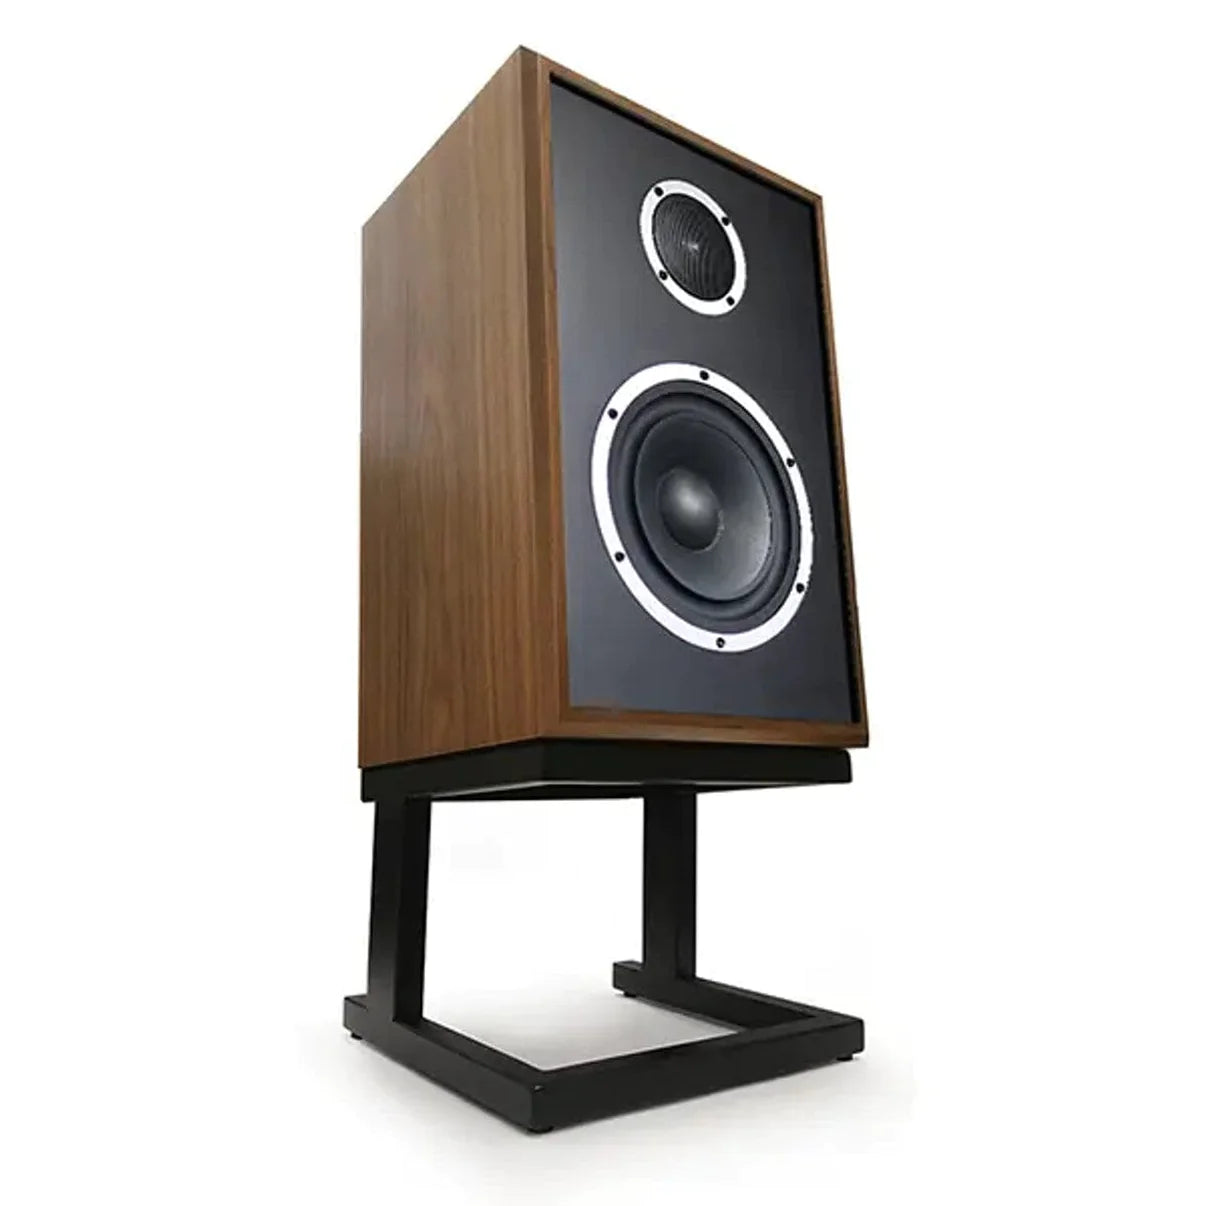 KLH Model 3 Speakers